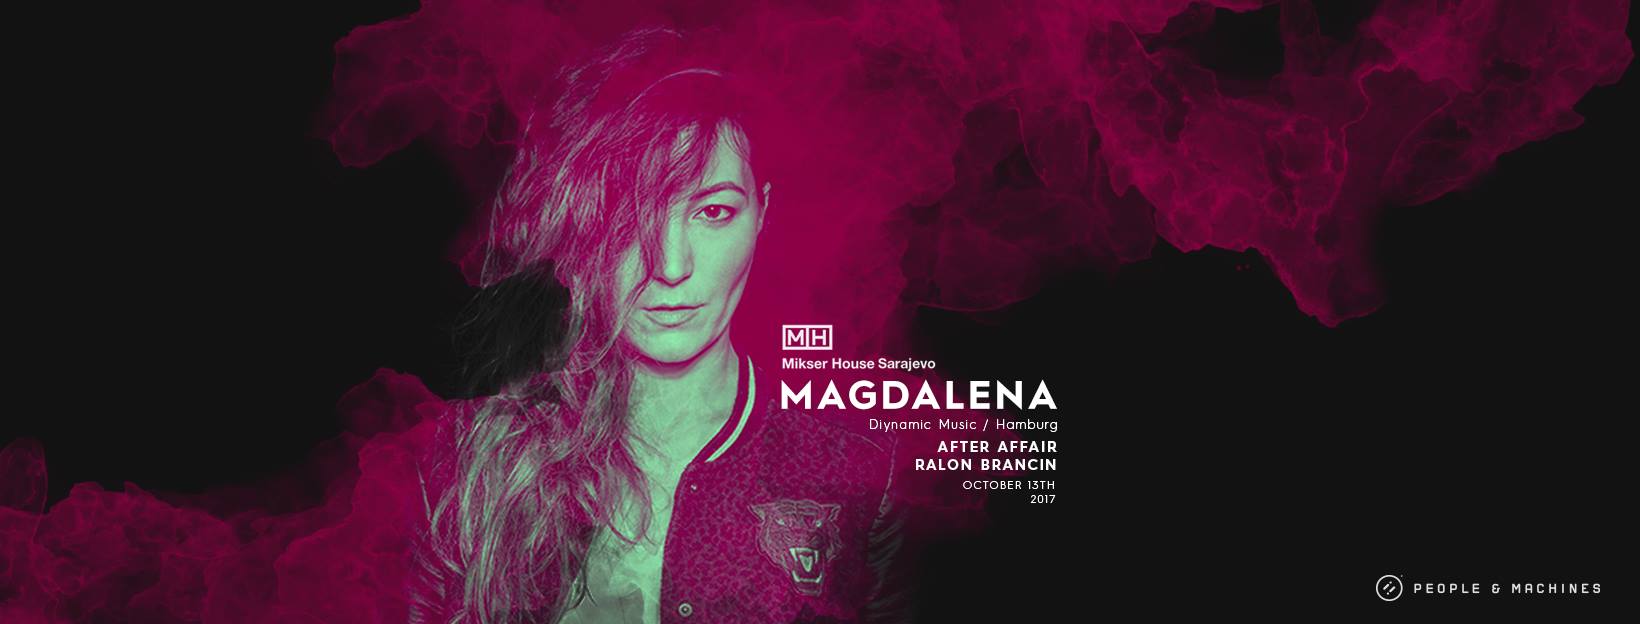 Magdalena I Diynamic Music 13.10.2017. Mikser, Sarajevo